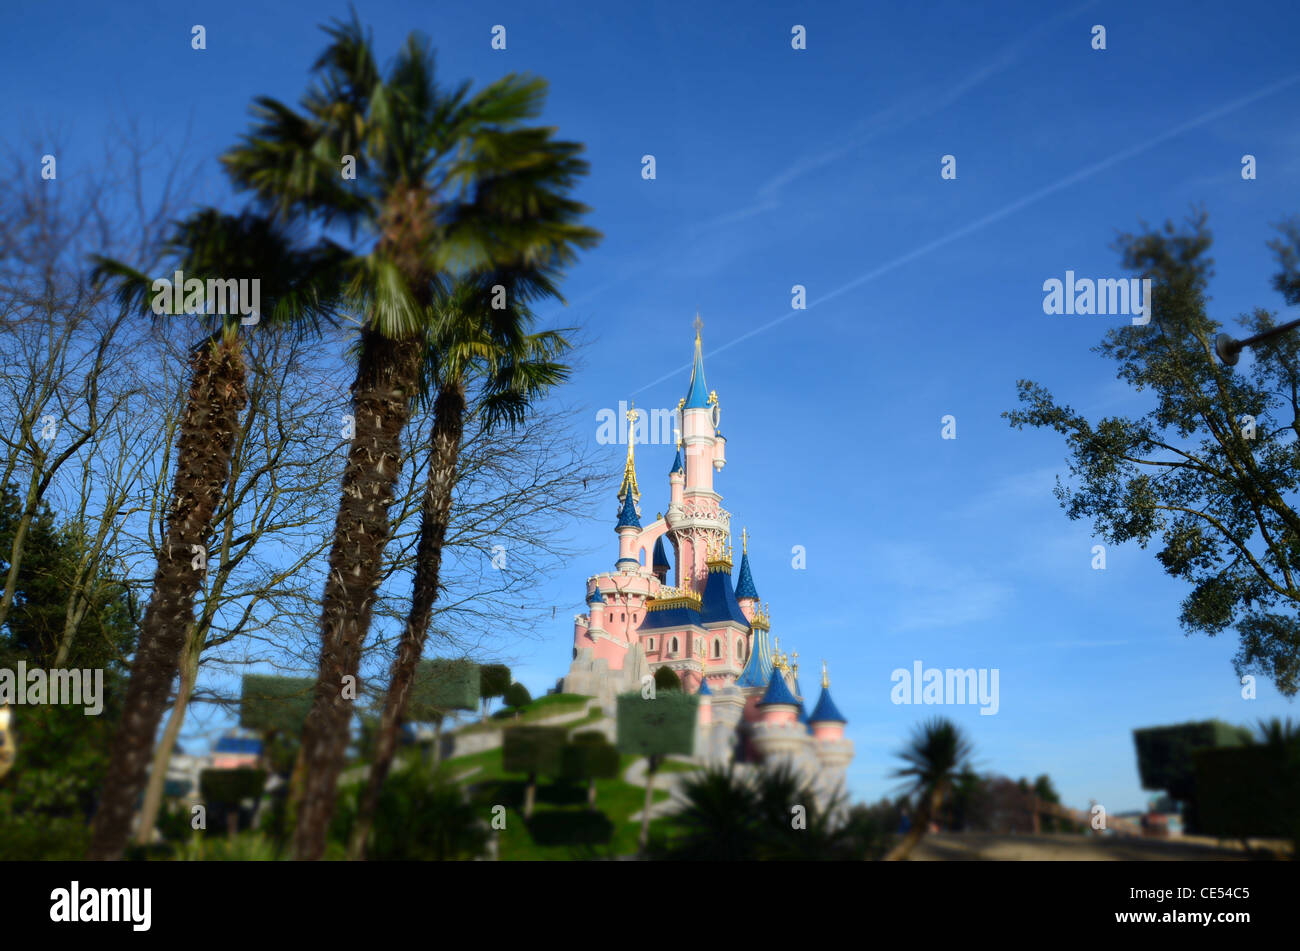 À l'intérieur du parc Disneyland près de Paris, France. Banque D'Images